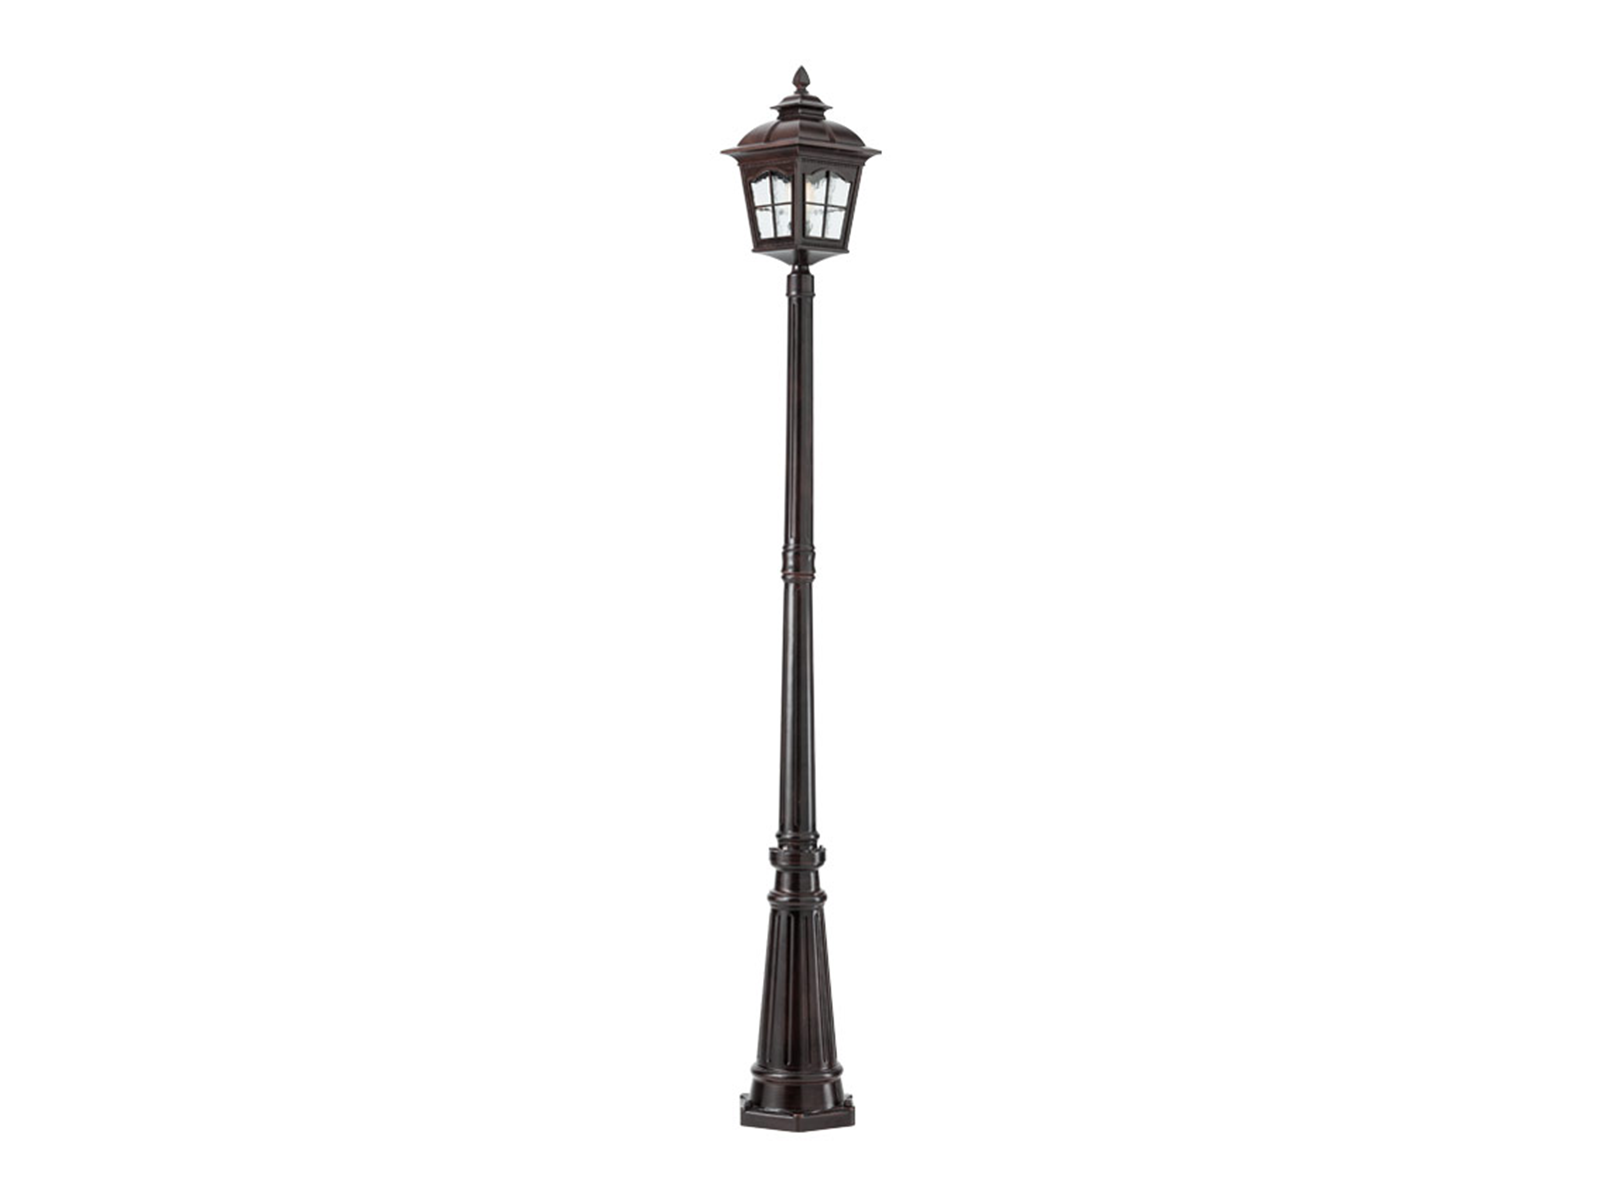 Stojací lampa York černo hnědá, E27, 218,6cm